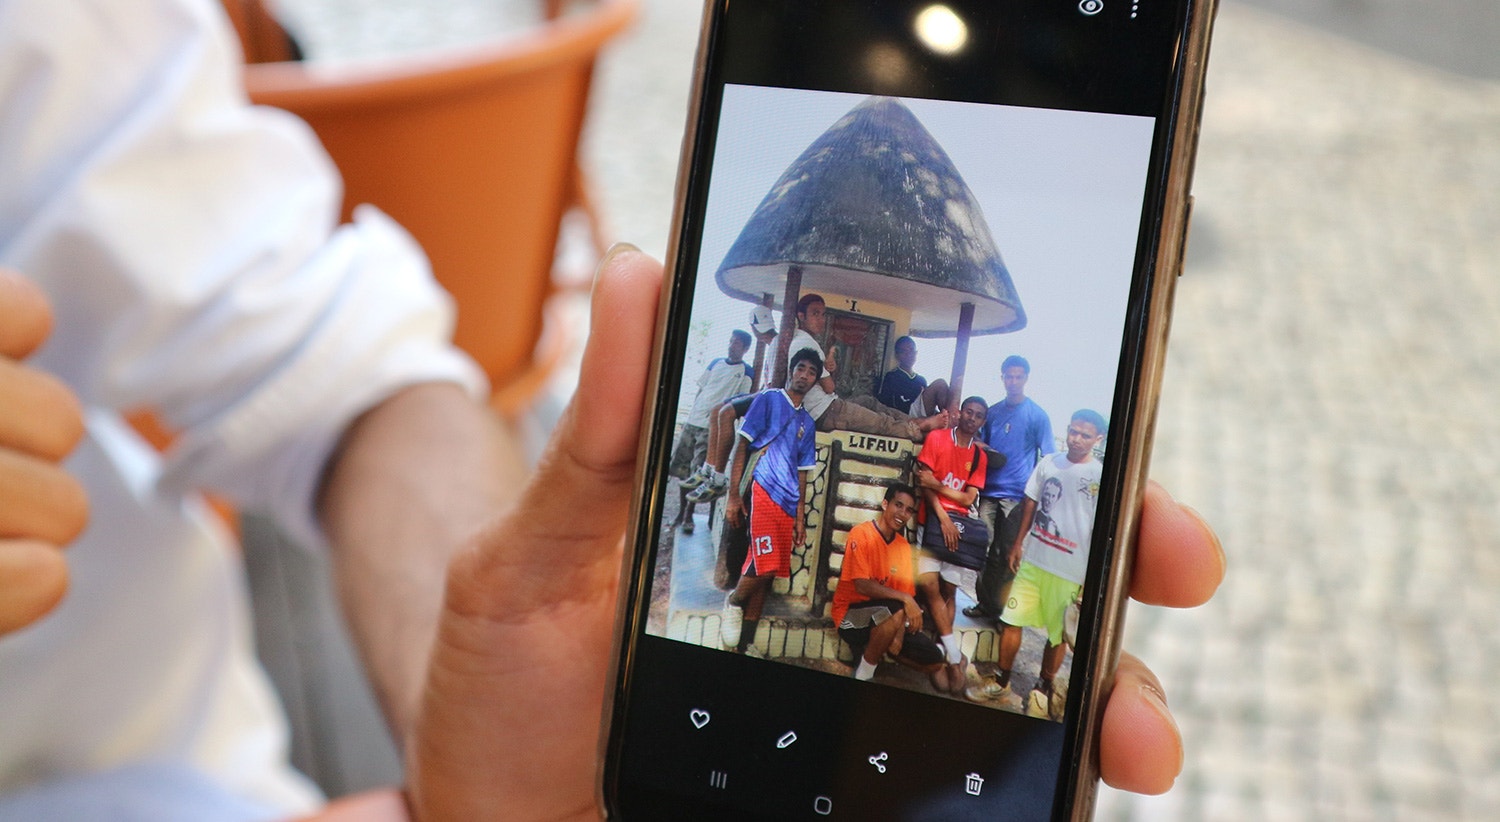  Mostra uma fotografia com os amigos em Timor. 